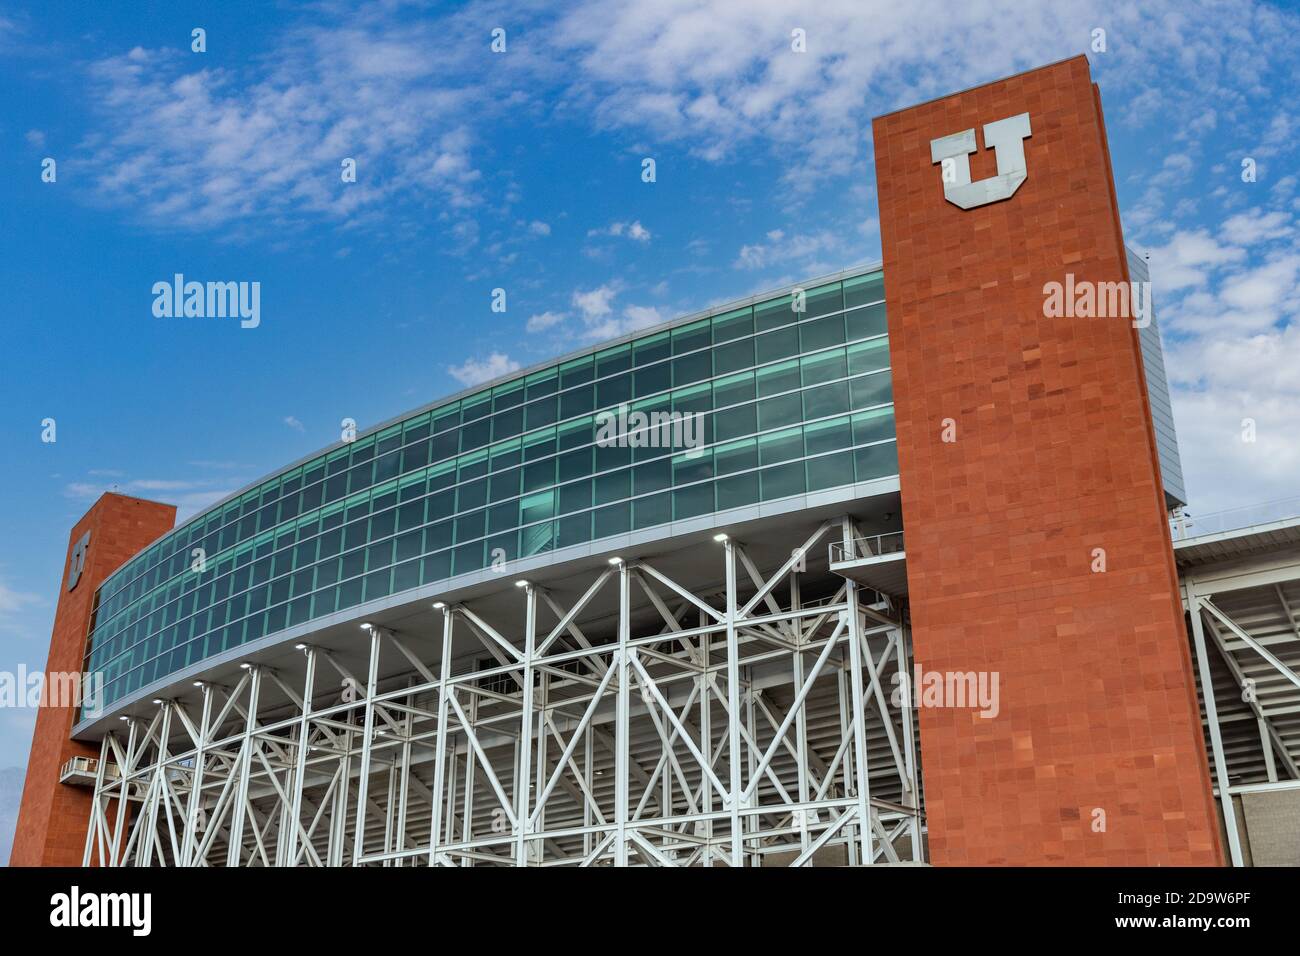 Salt Lake City, UT / USA - 6 novembre 2020: Rice-Eccles Stadium, sede della squadra di calcio Utah Utes, e le Olimpiadi invernali del 2002 Foto Stock